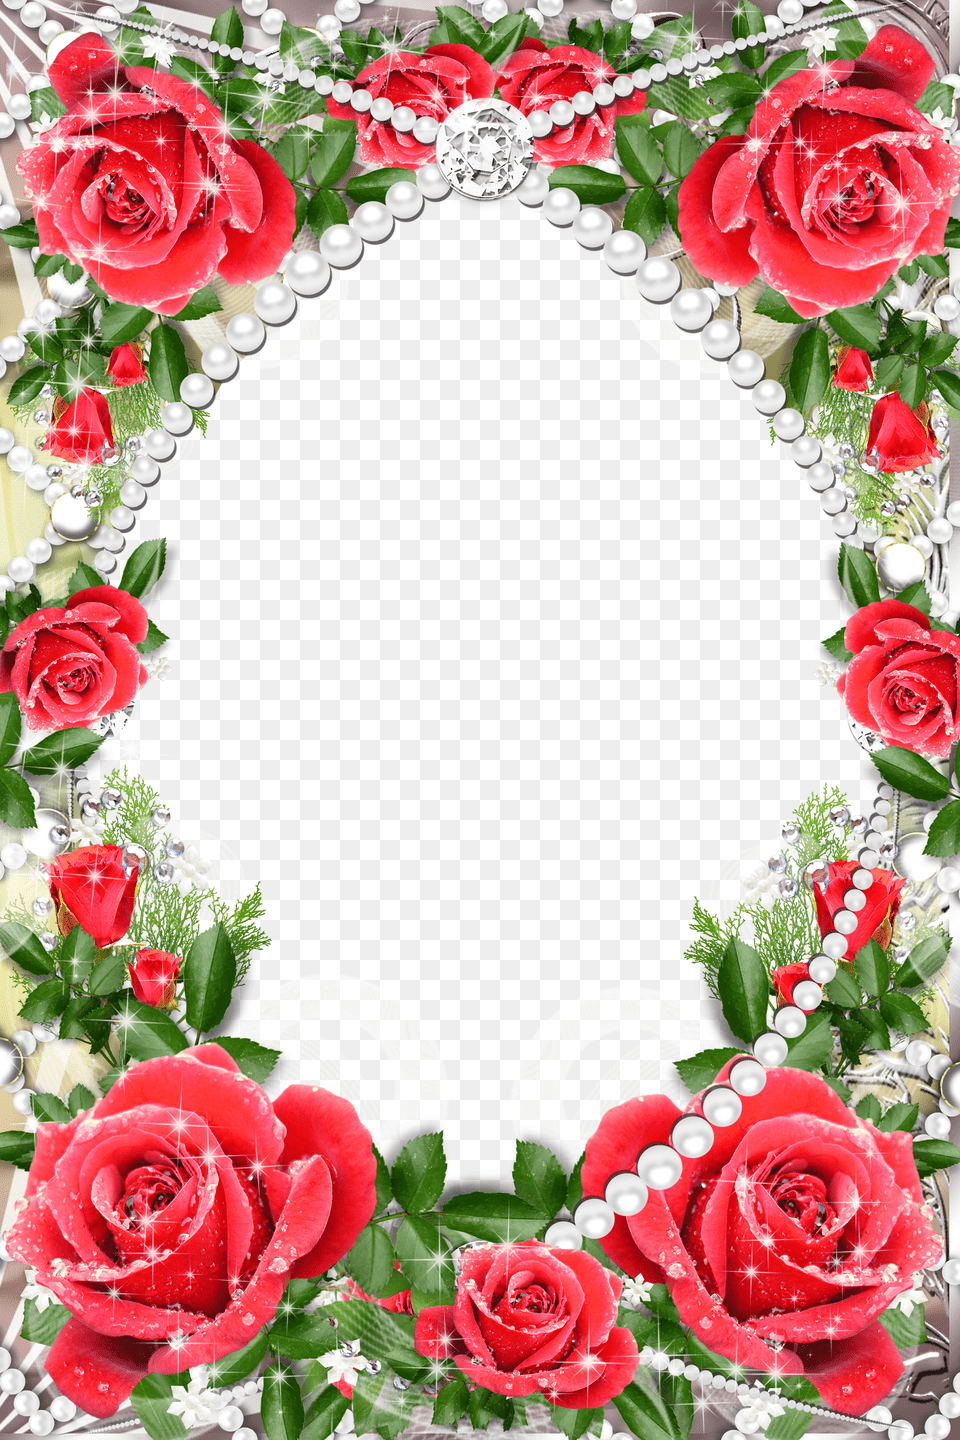 Red Rose Flower Border Design Png Image